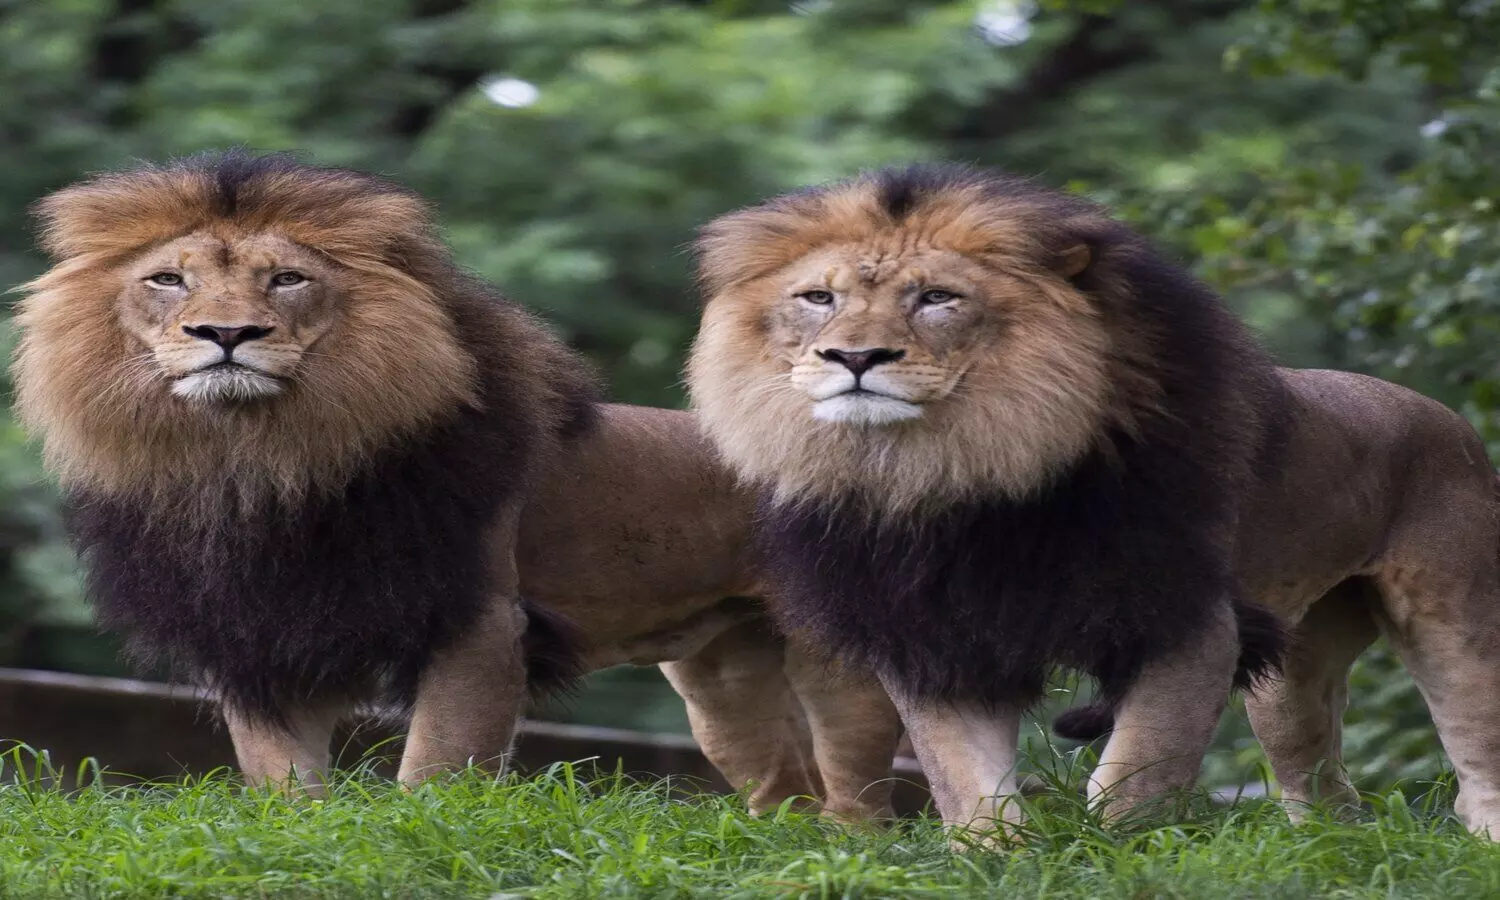 Two lions escape